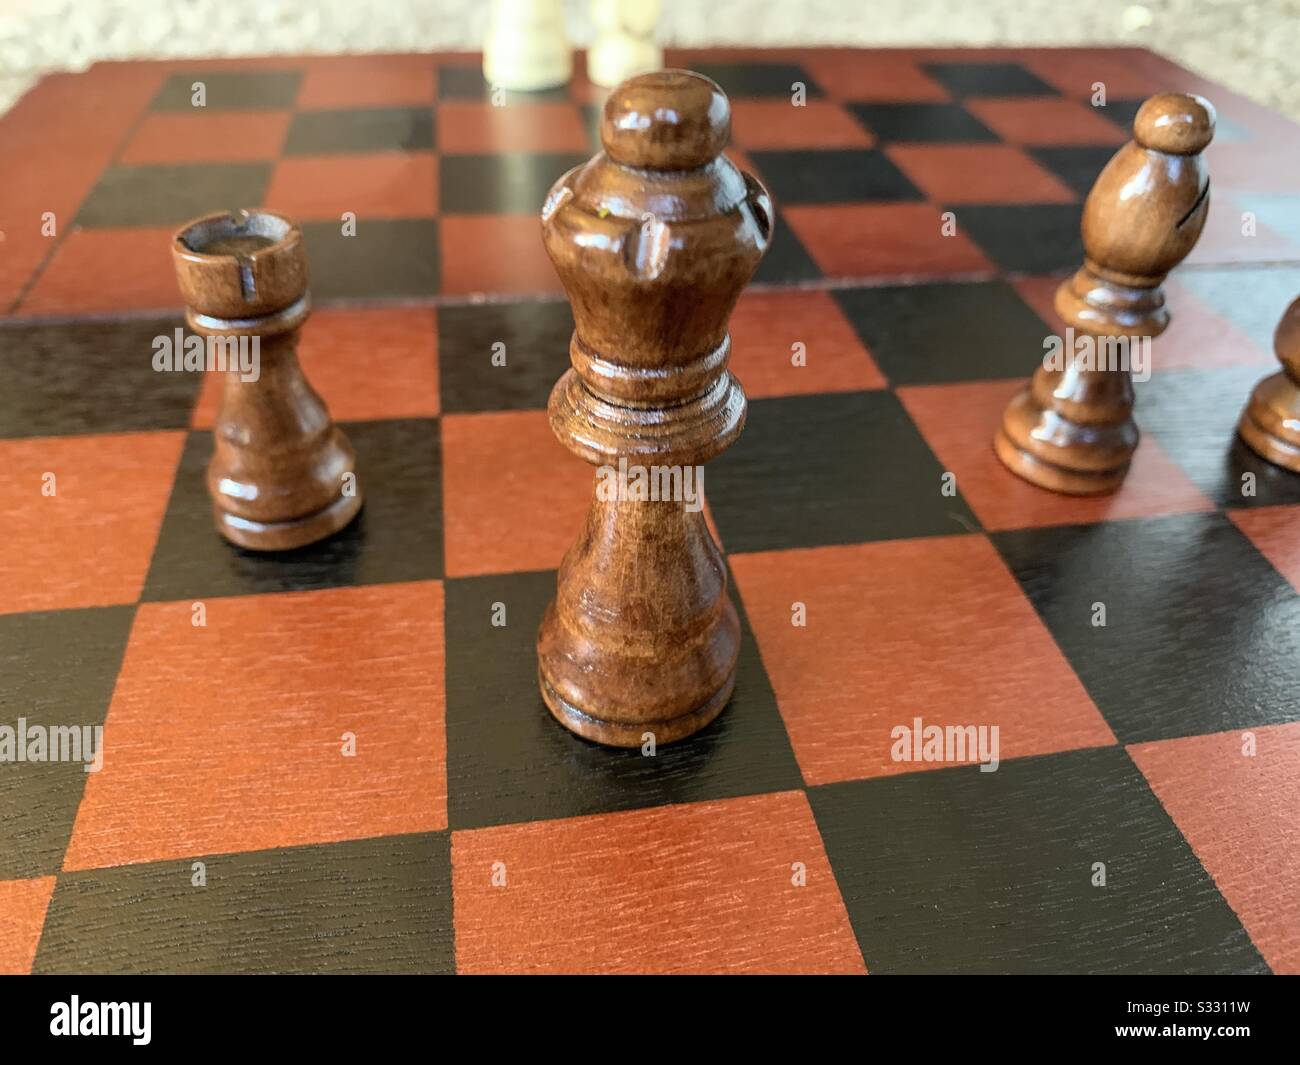 Jeu d'échecs - Jouer au jeu d'échecs, avec des pièces d'échecs Banque D'Images